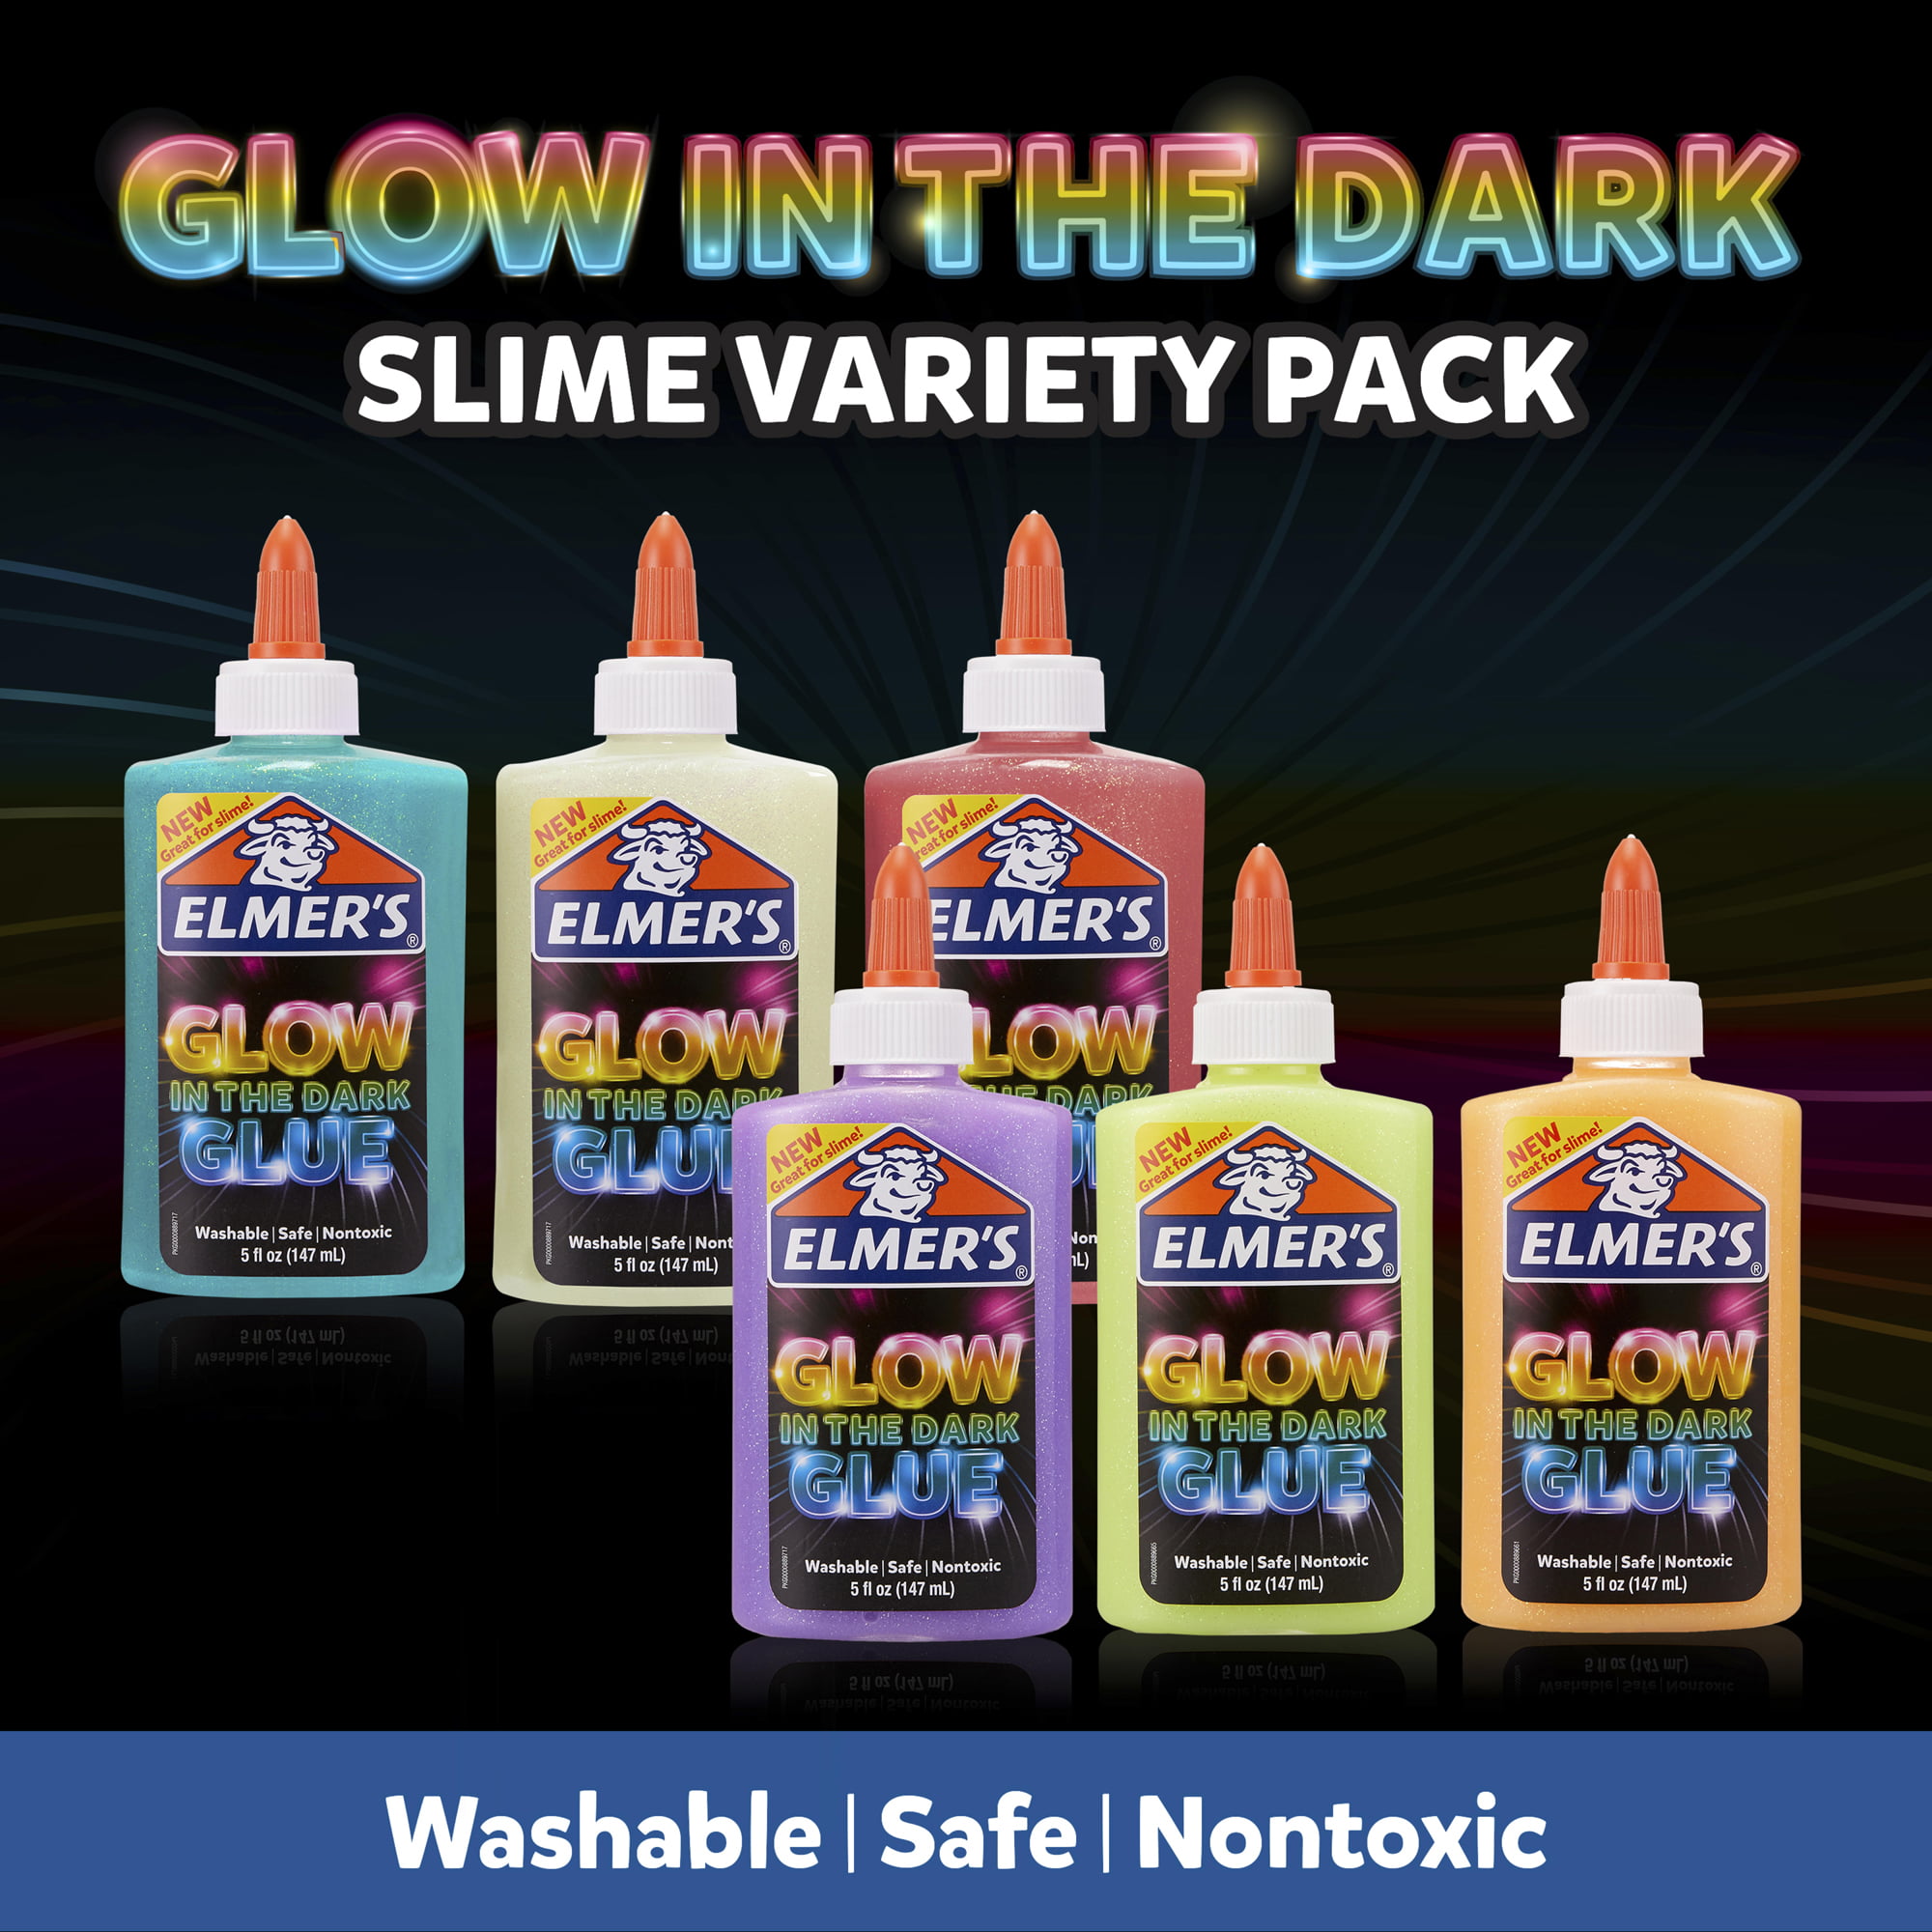 Elmer's Glow in the Dark Glue Pink (5 oz)